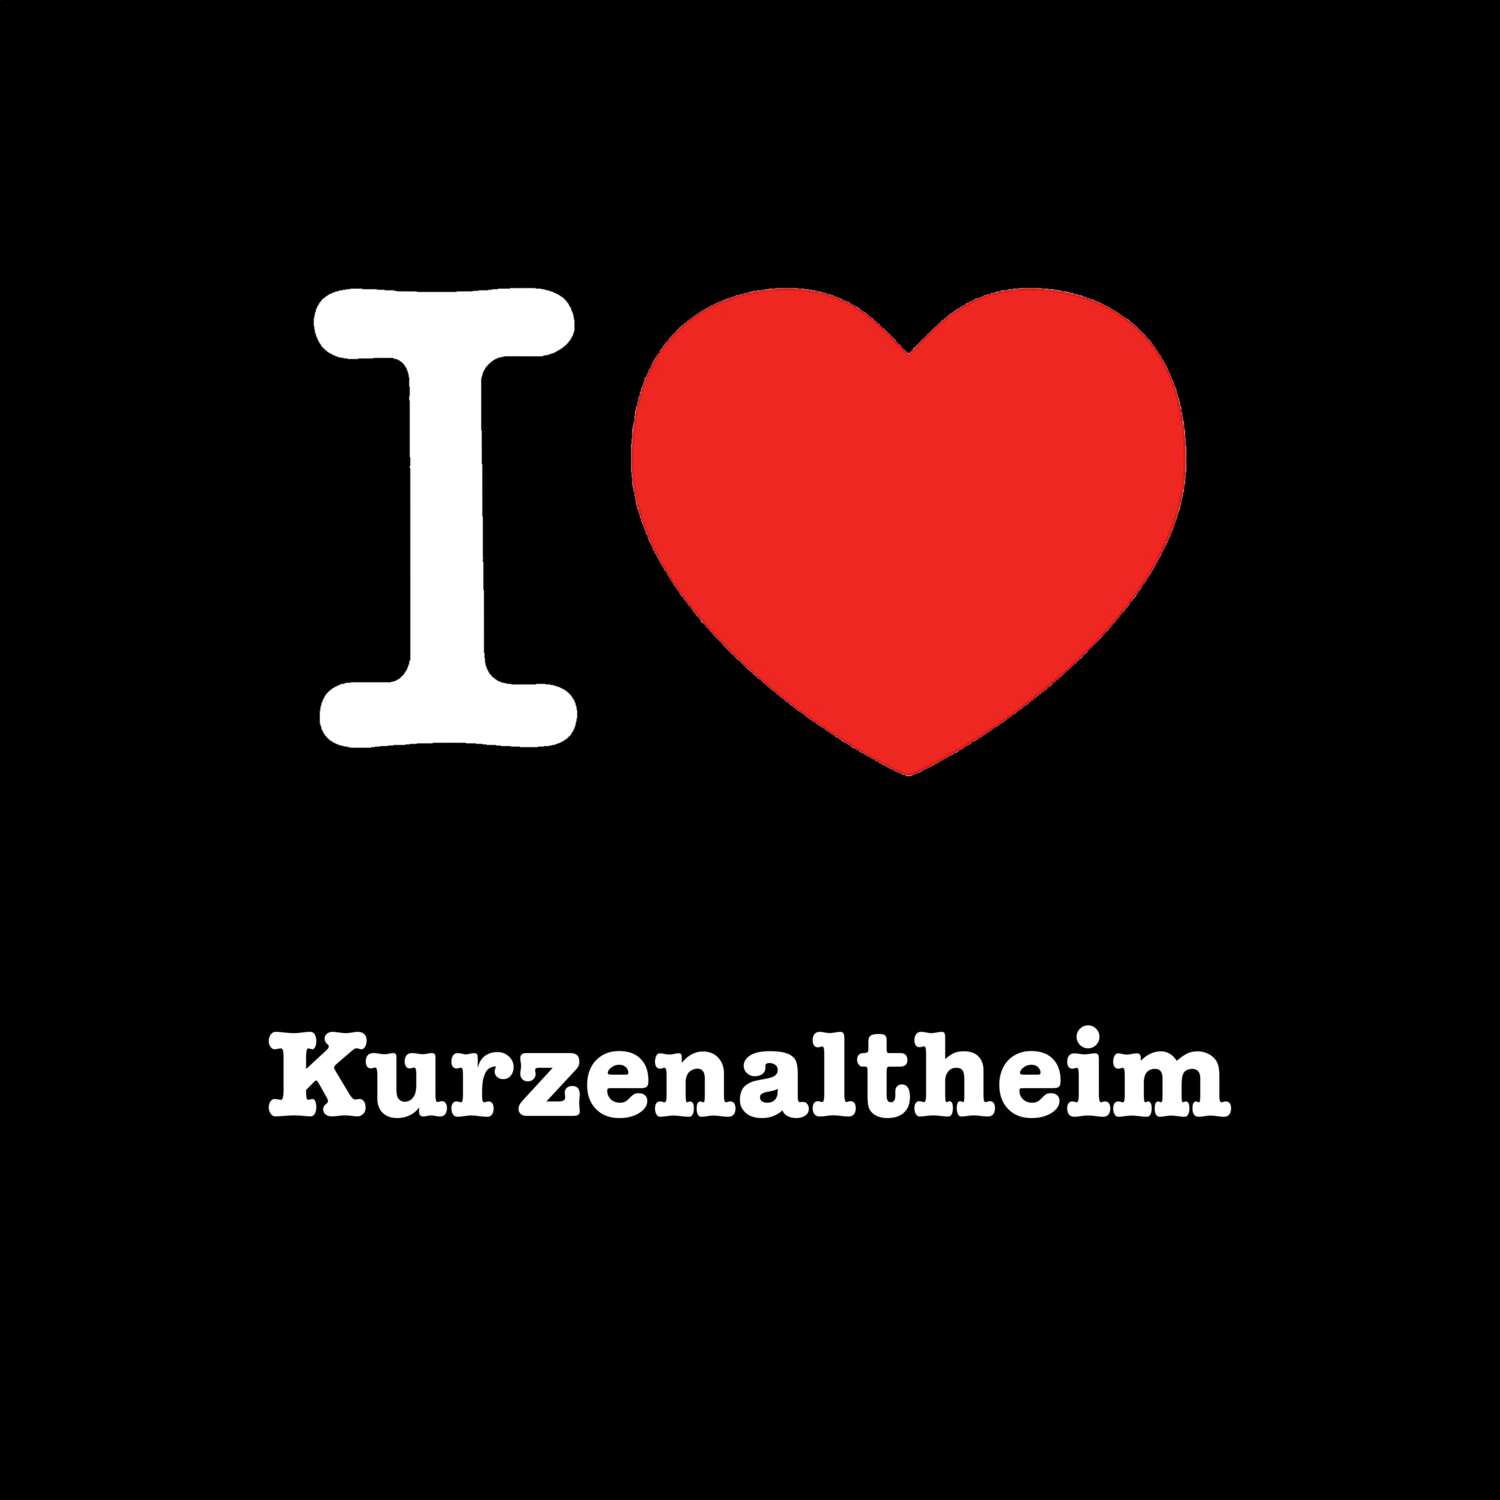 Kurzenaltheim T-Shirt »I love«